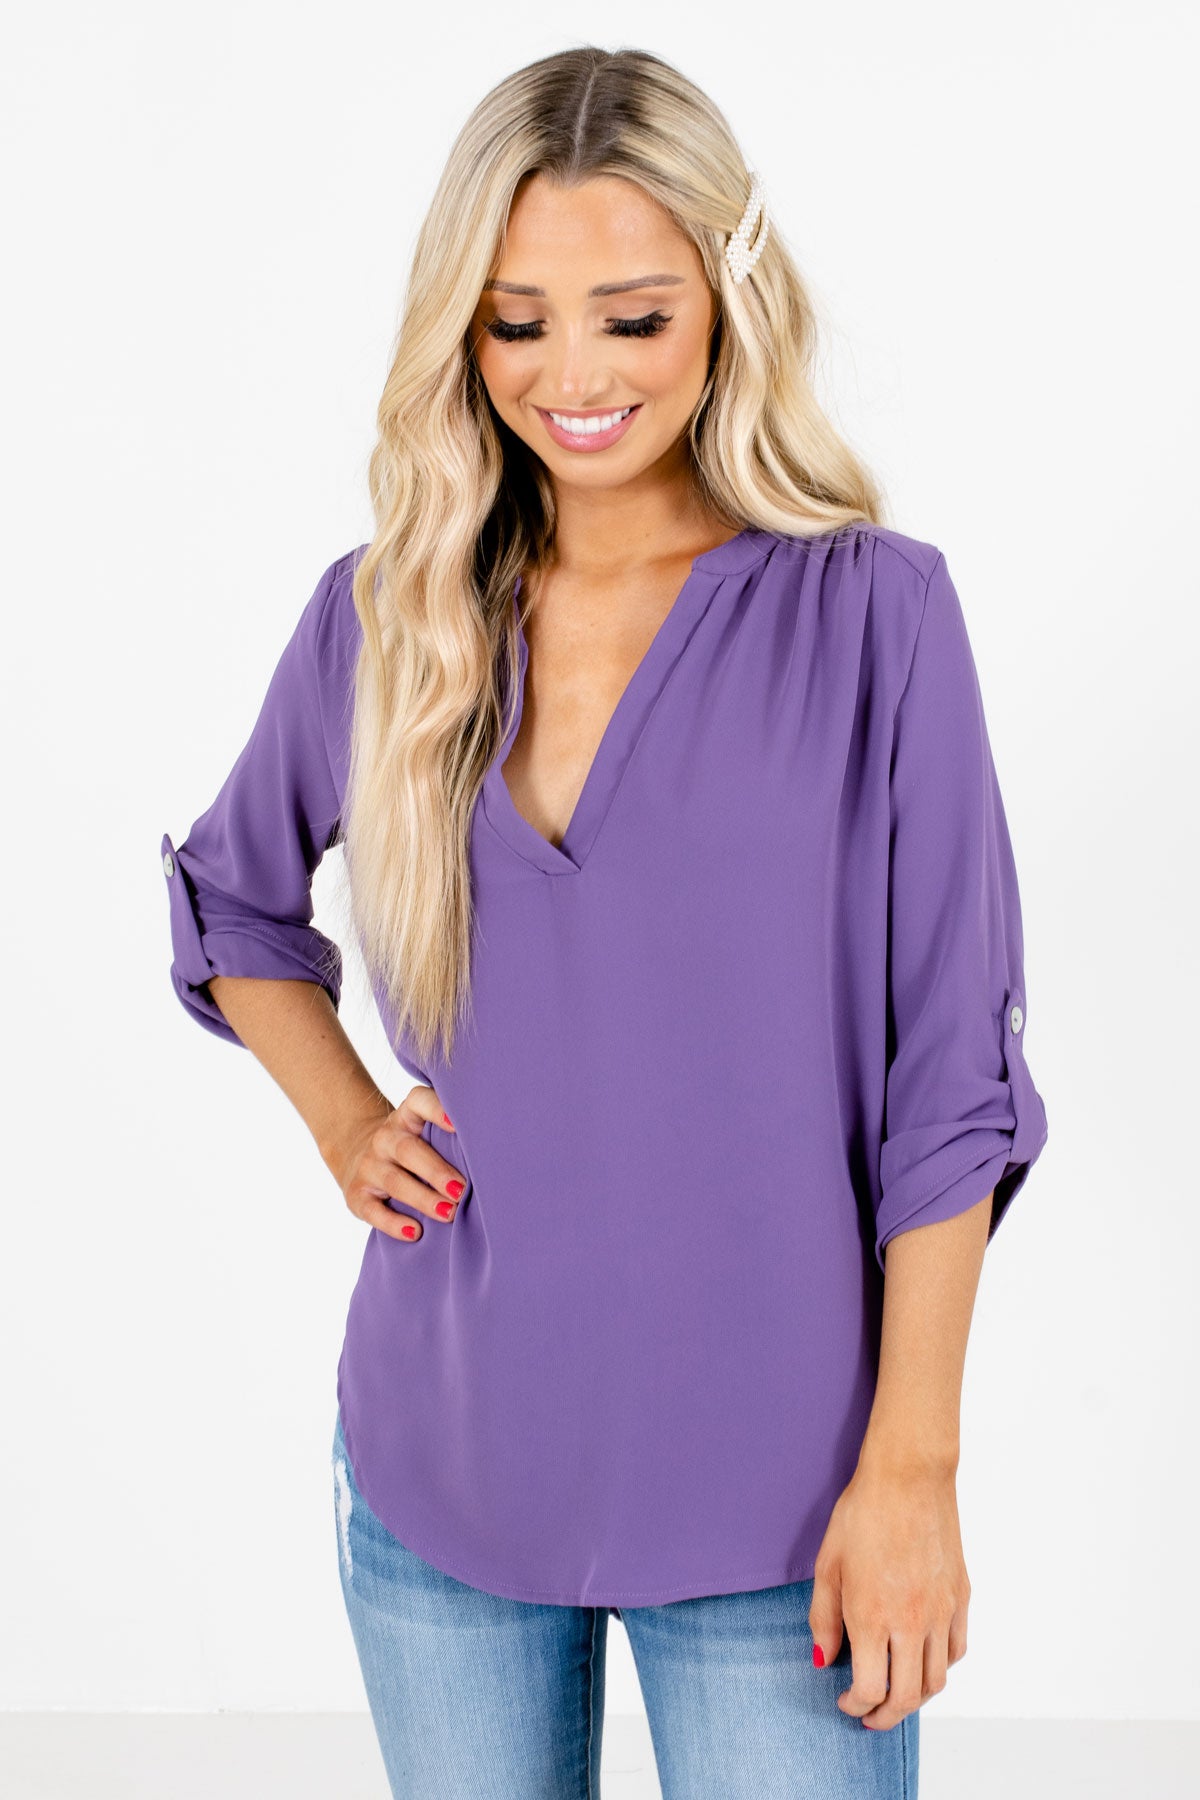 Women's Purple Business Casual Boutique Blouse